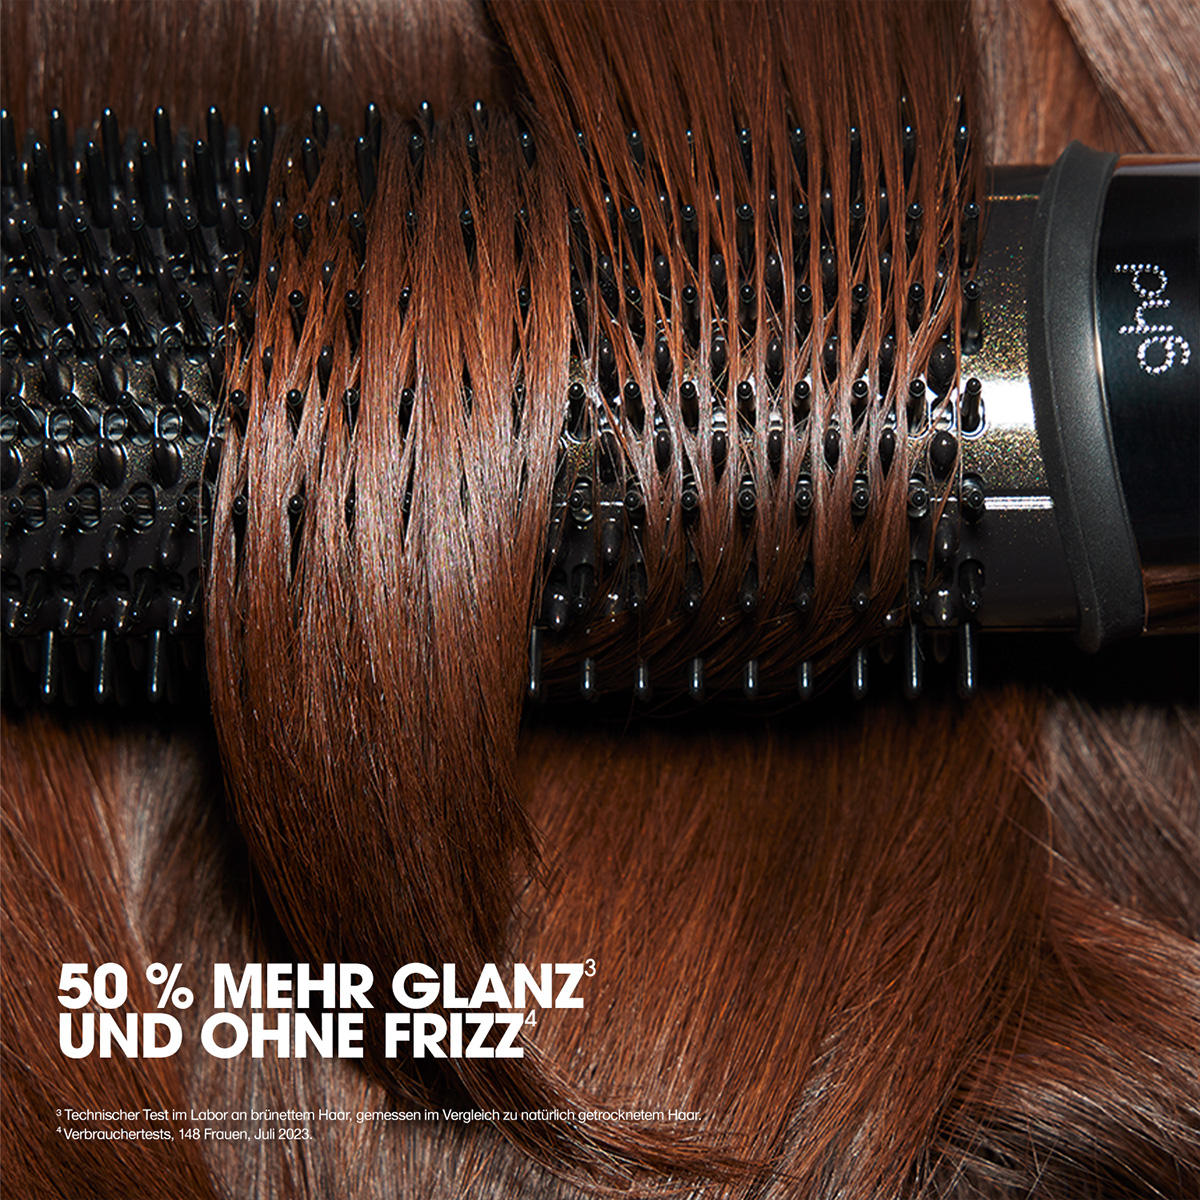 ghd duet blowdry Hair Dryer Brush nero - 4